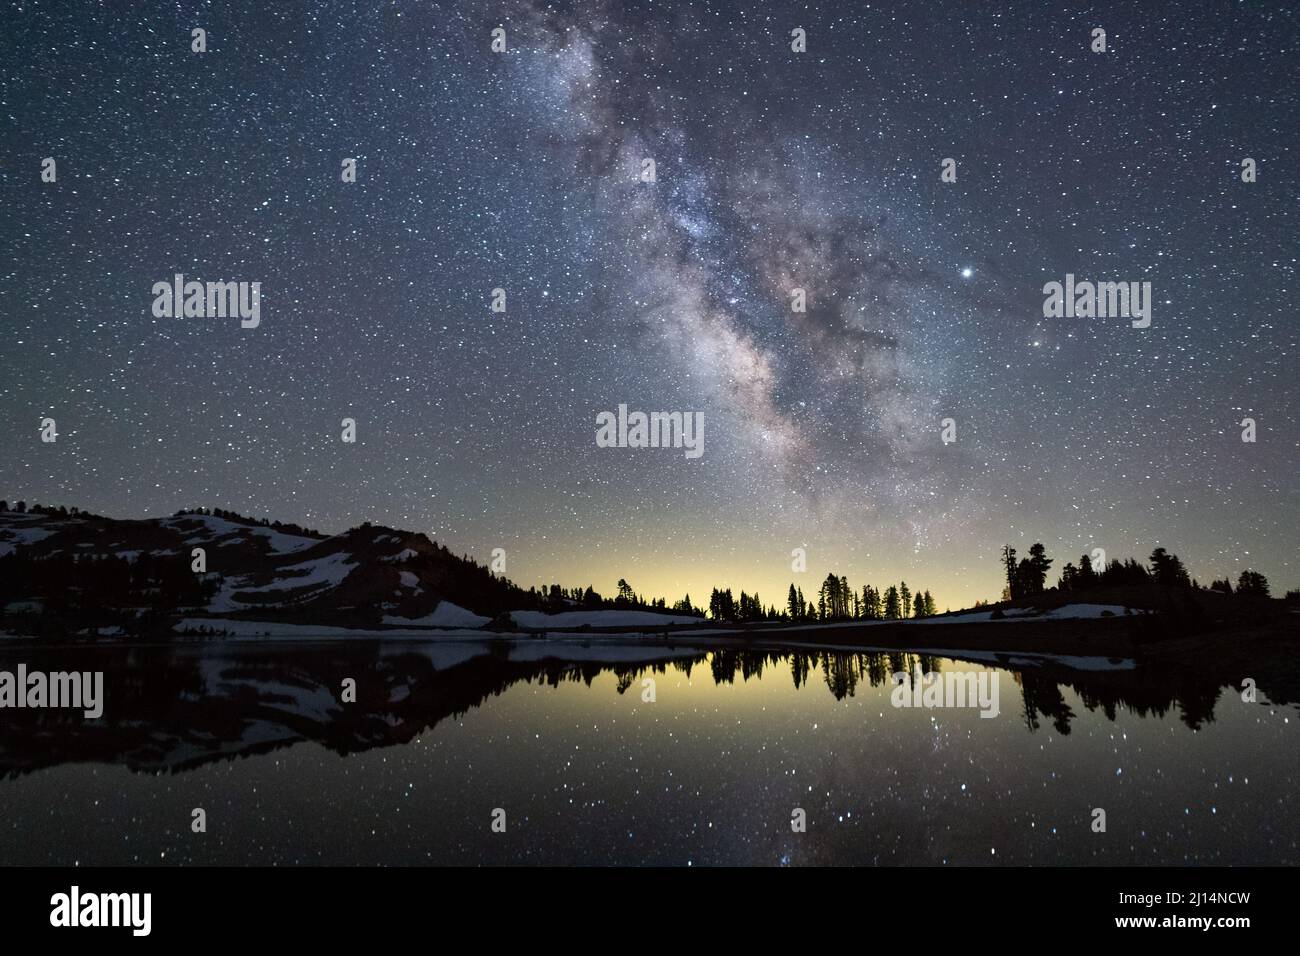 La galaxie de la voie lactée et les étoiles au-dessus du lac Emerald dans le parc national volcanique de Lassen, en Californie Banque D'Images